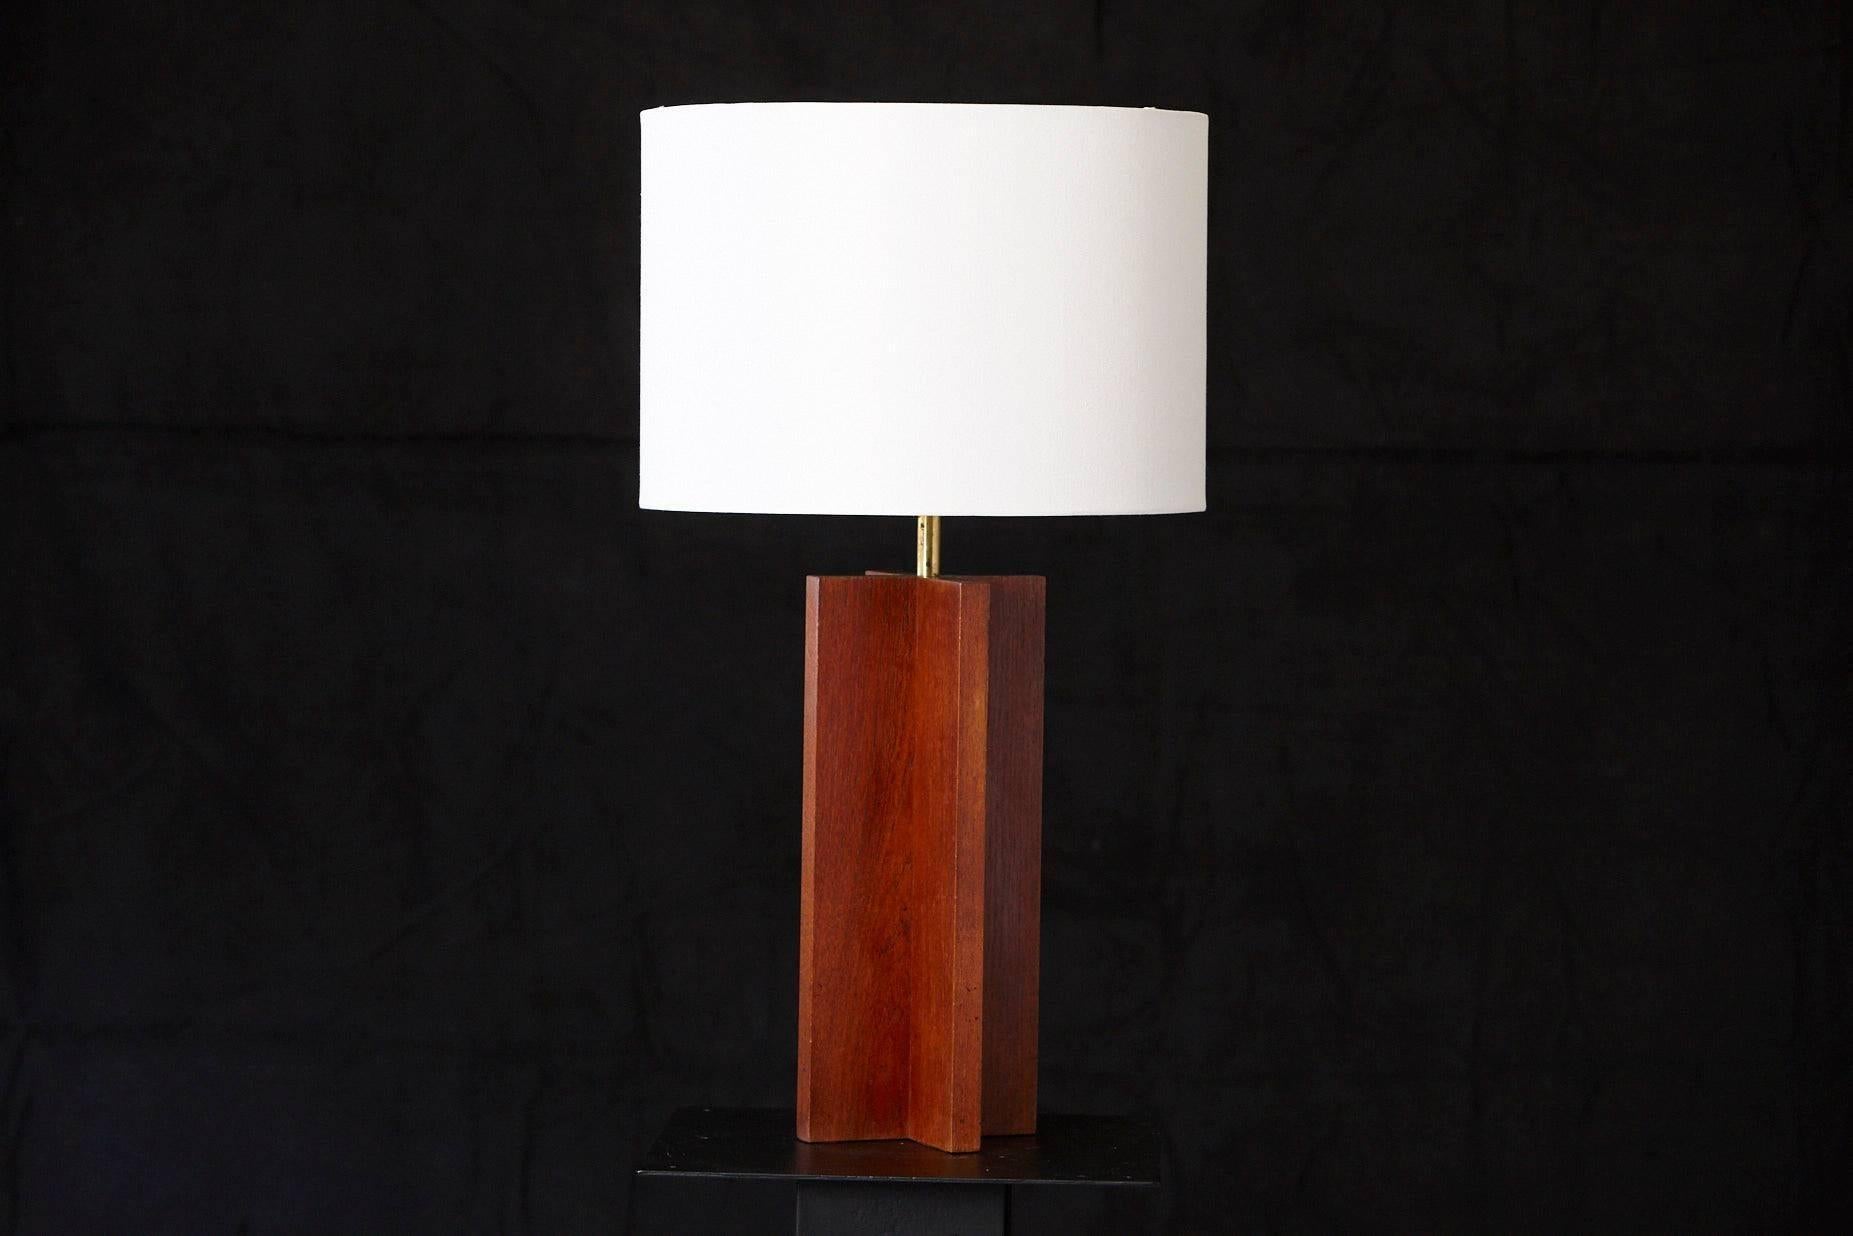 Lampe de table cruciforme en chêne massif, minimaliste et pure.
Dimensions : de la hauteur à l'épi de faîtage 33 in.